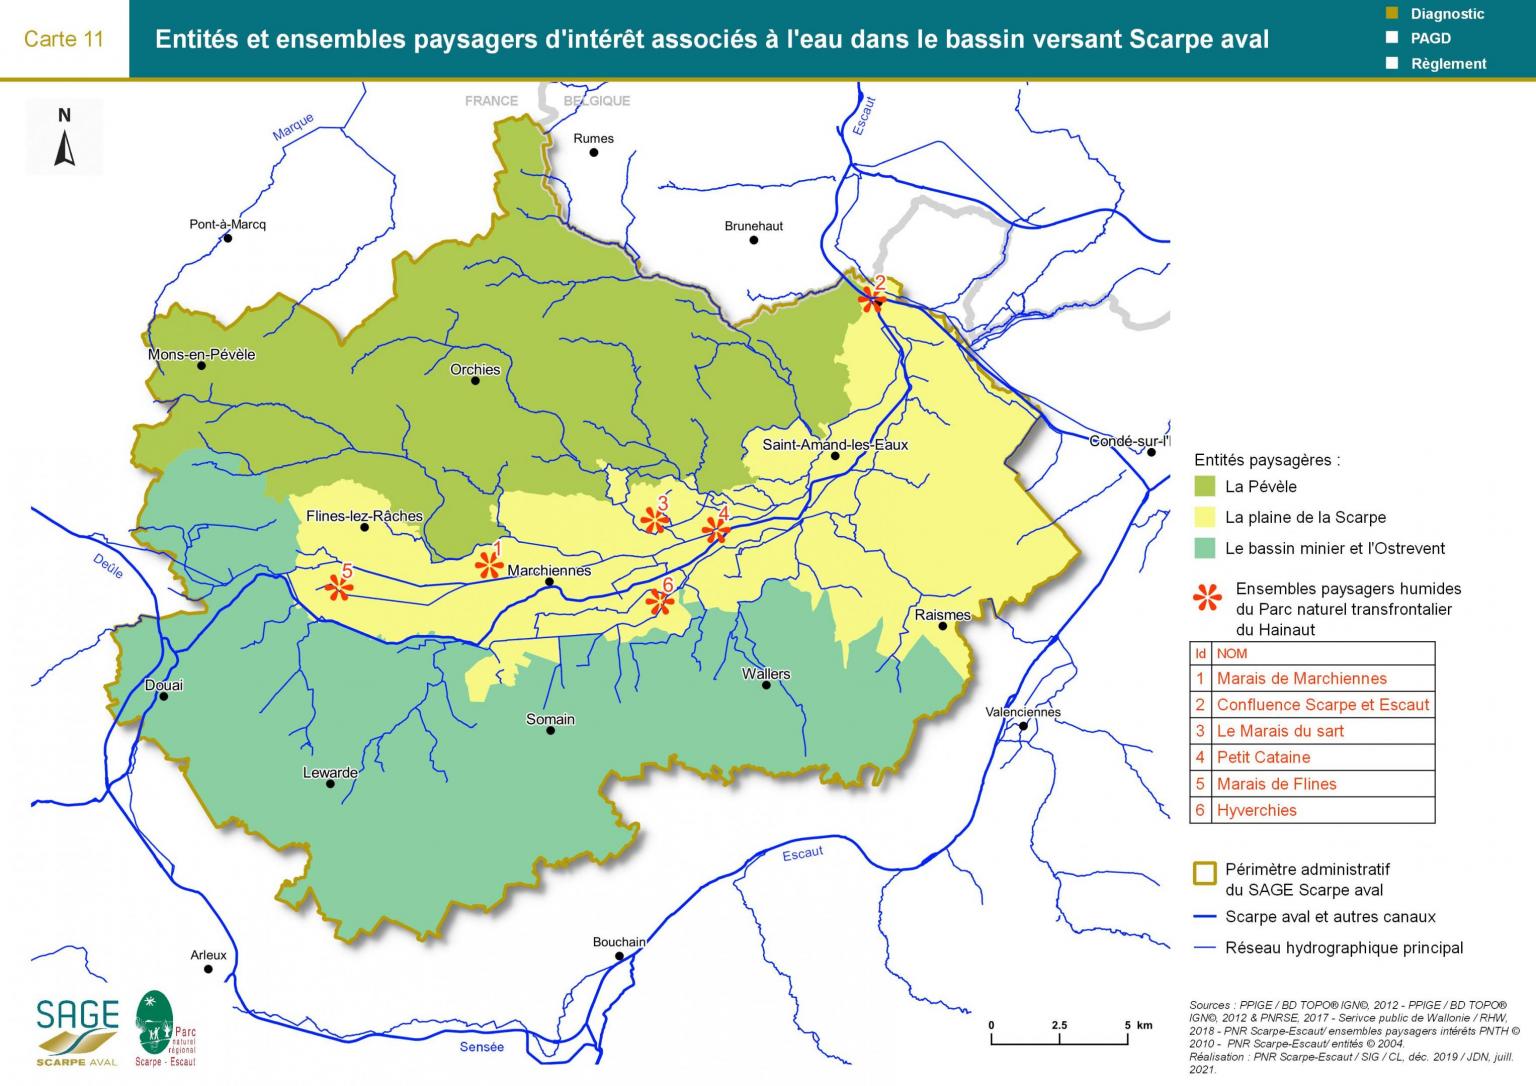 Etat des lieux - Carte 11 : Entités et ensembles paysagers d’intérêt associés à l’eau dans le bassin versant Scarpe aval